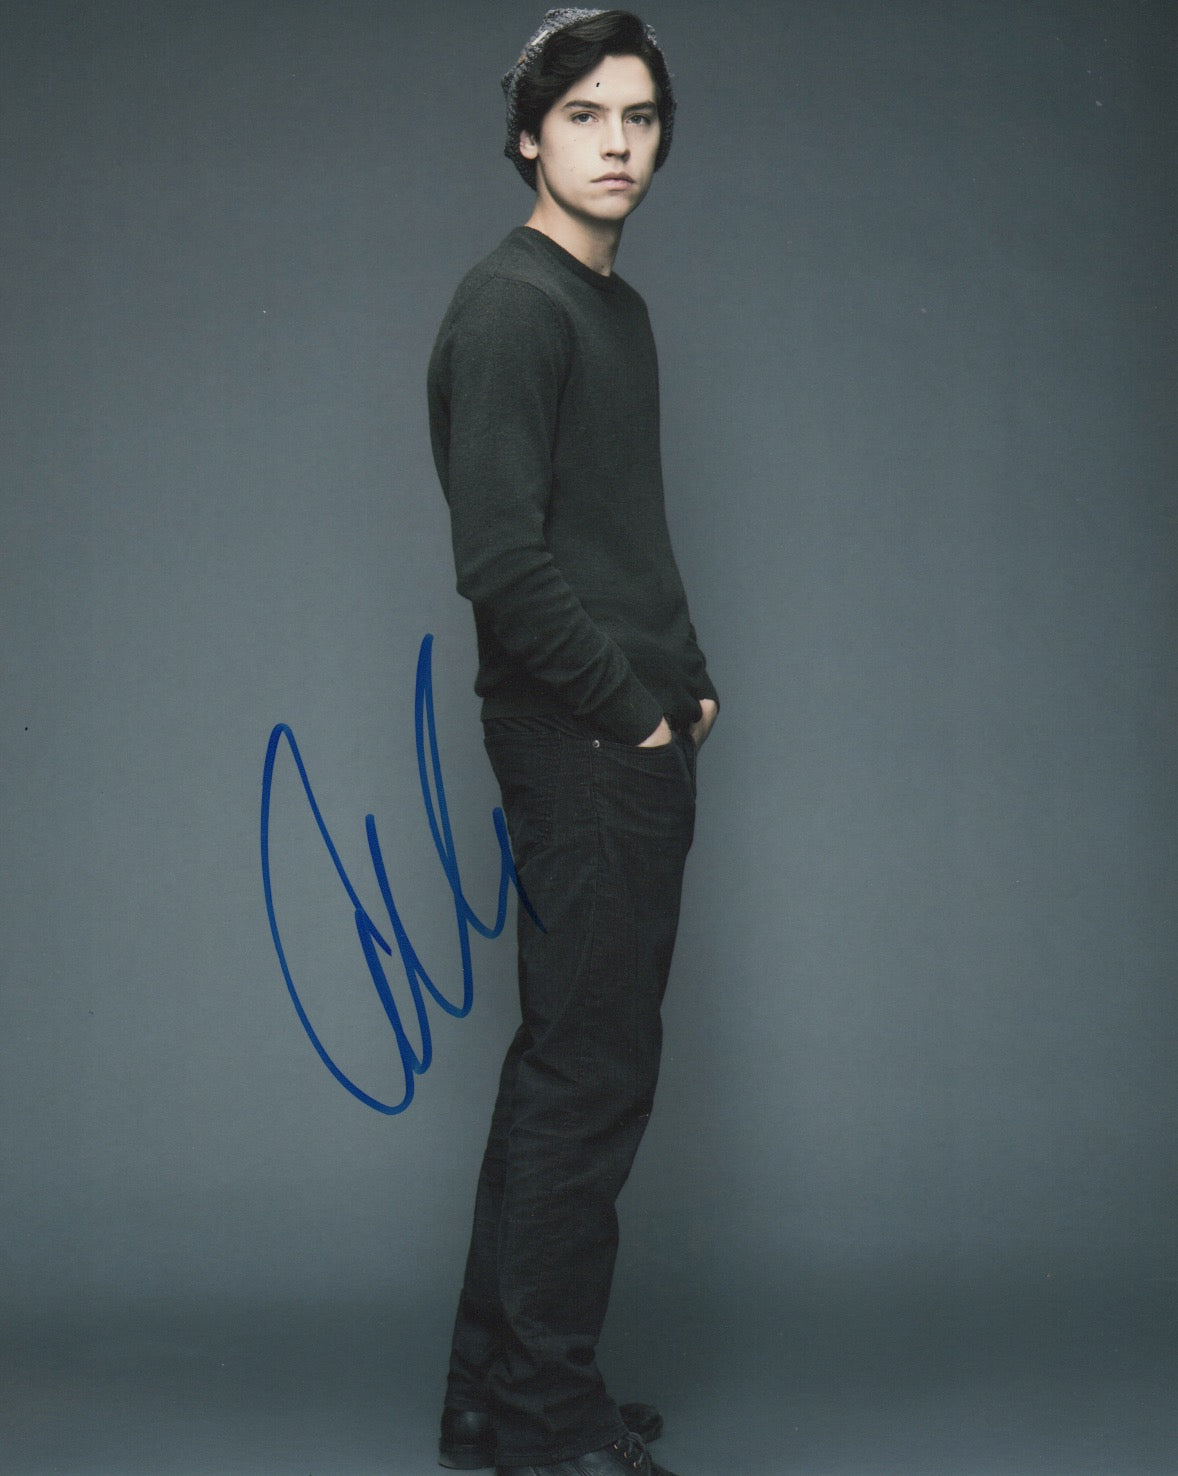 Cole Sprouse Riverdale Signed Autograph 8x10 Photo - Outlaw Hobbies Authentic Autographs